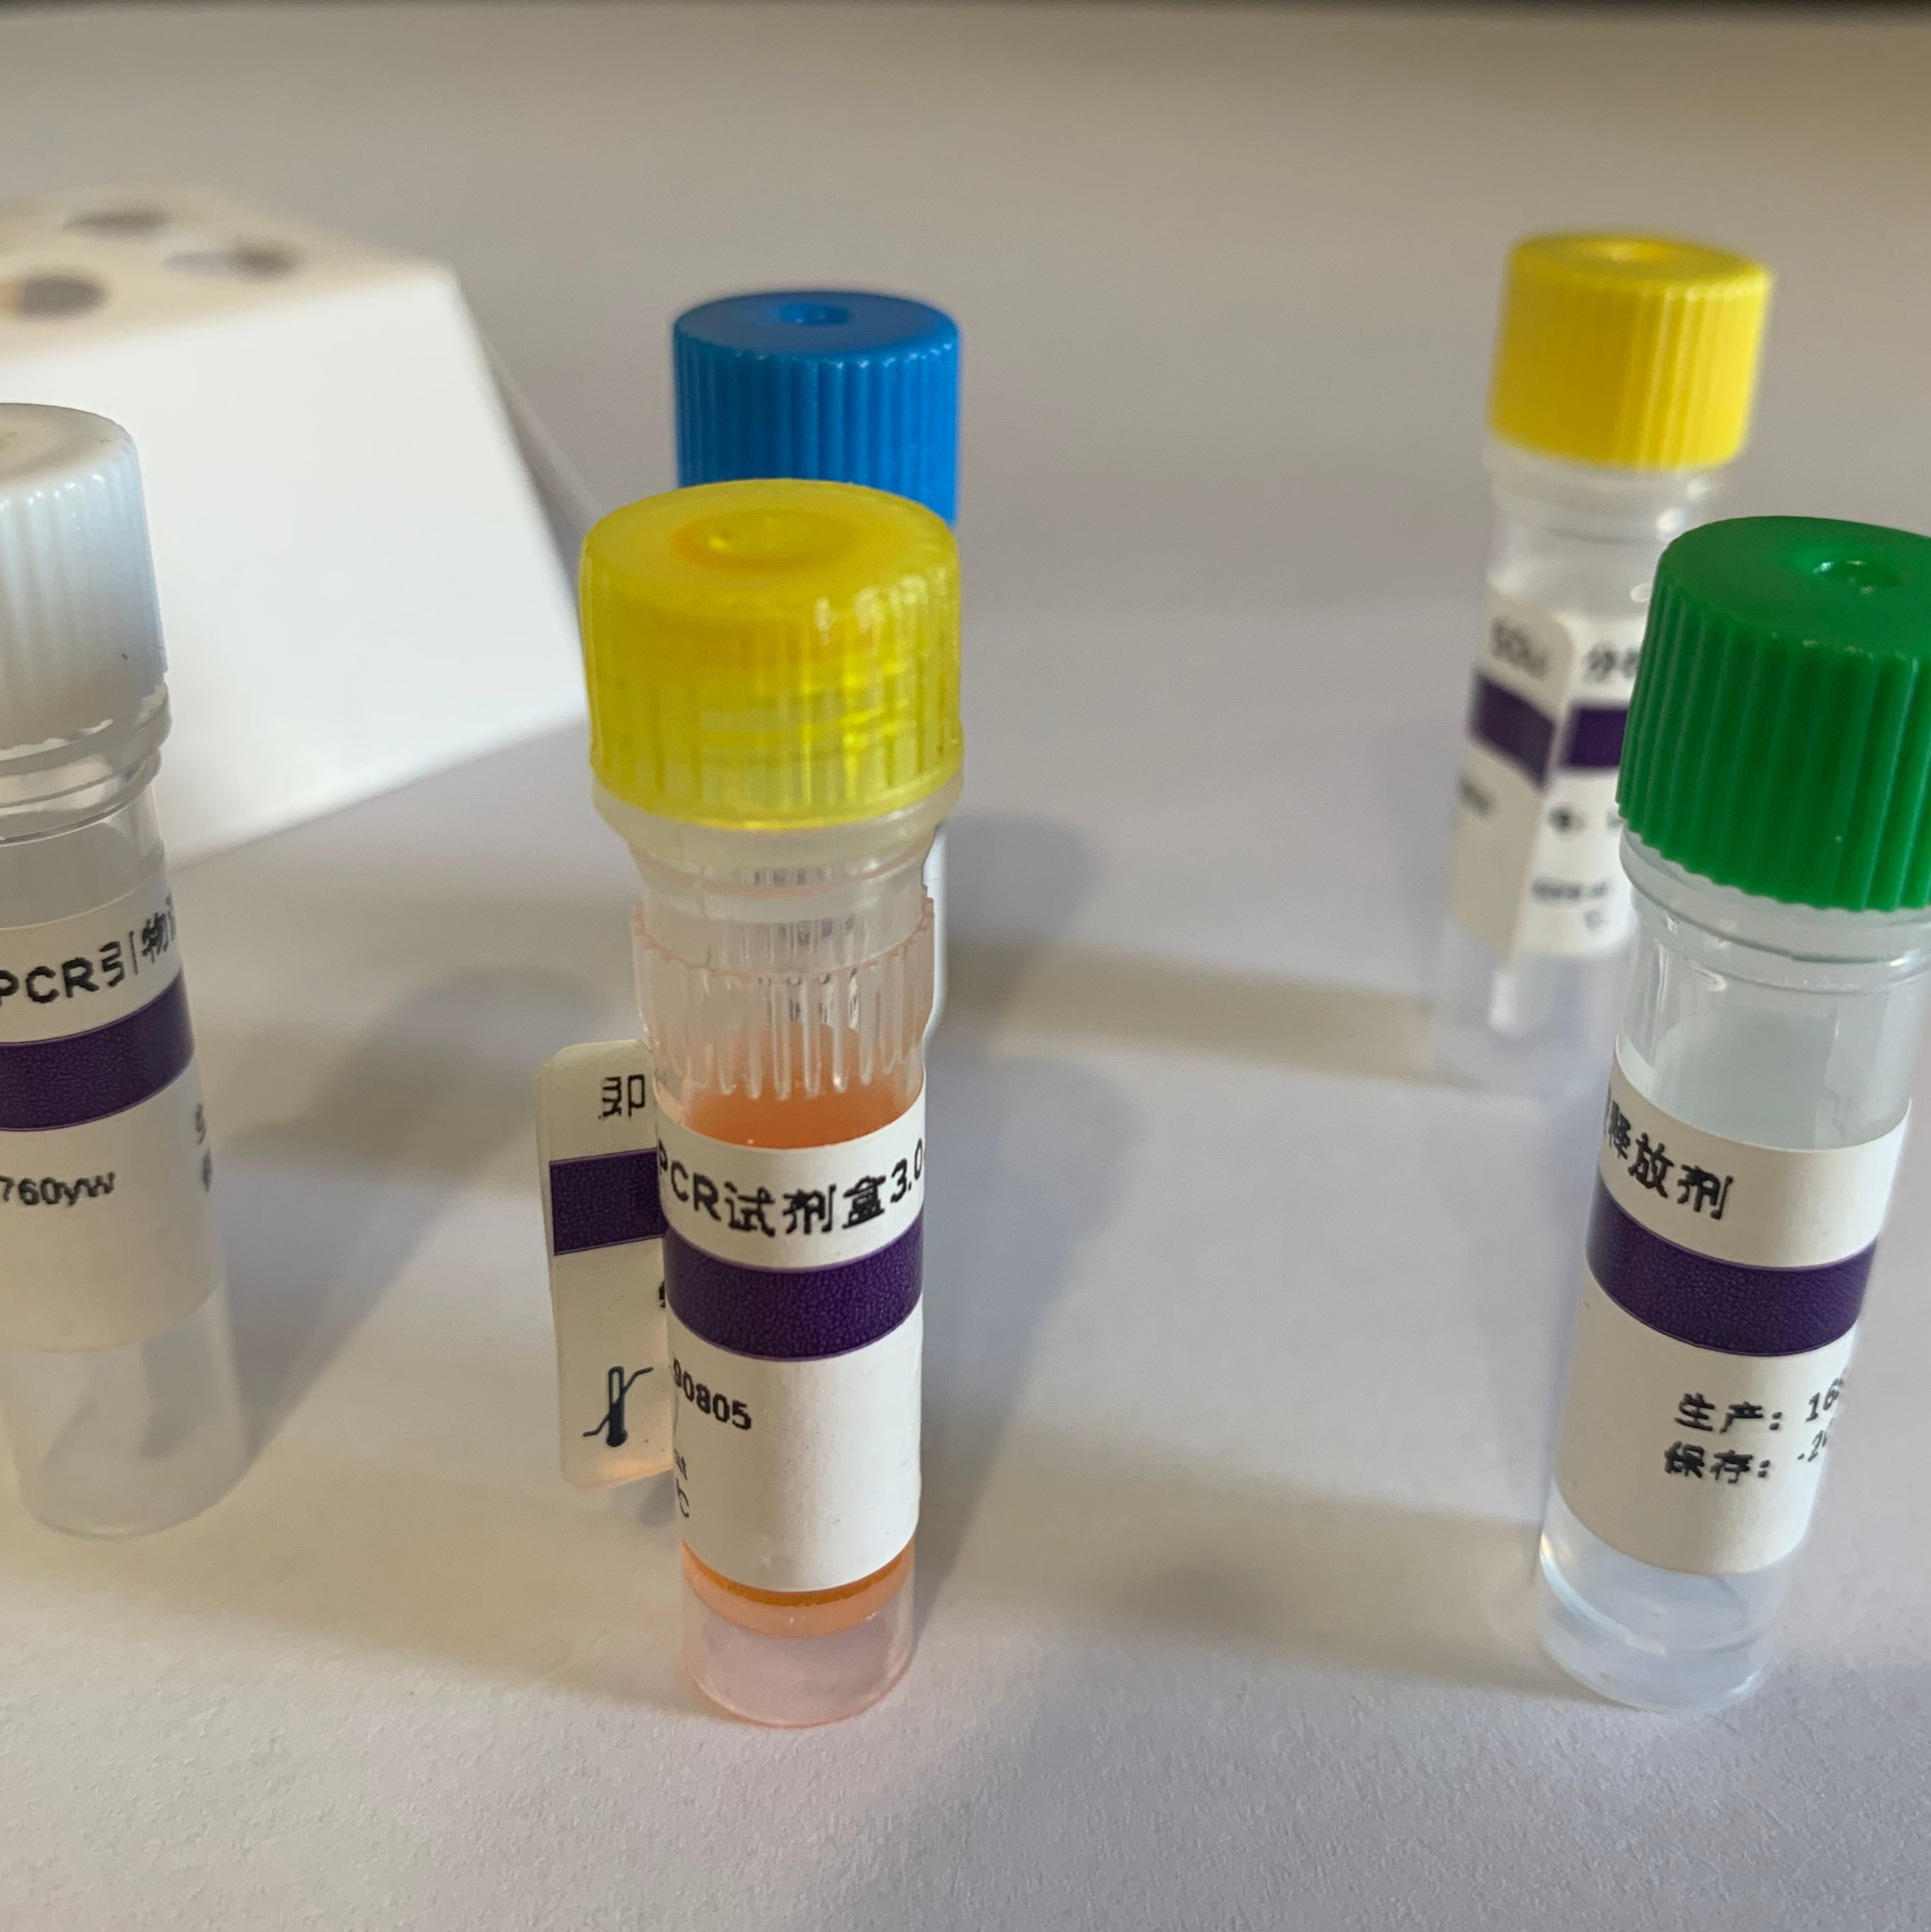 犬呼吸道冠状病毒病毒探针法荧光定量RT-PCR试剂盒